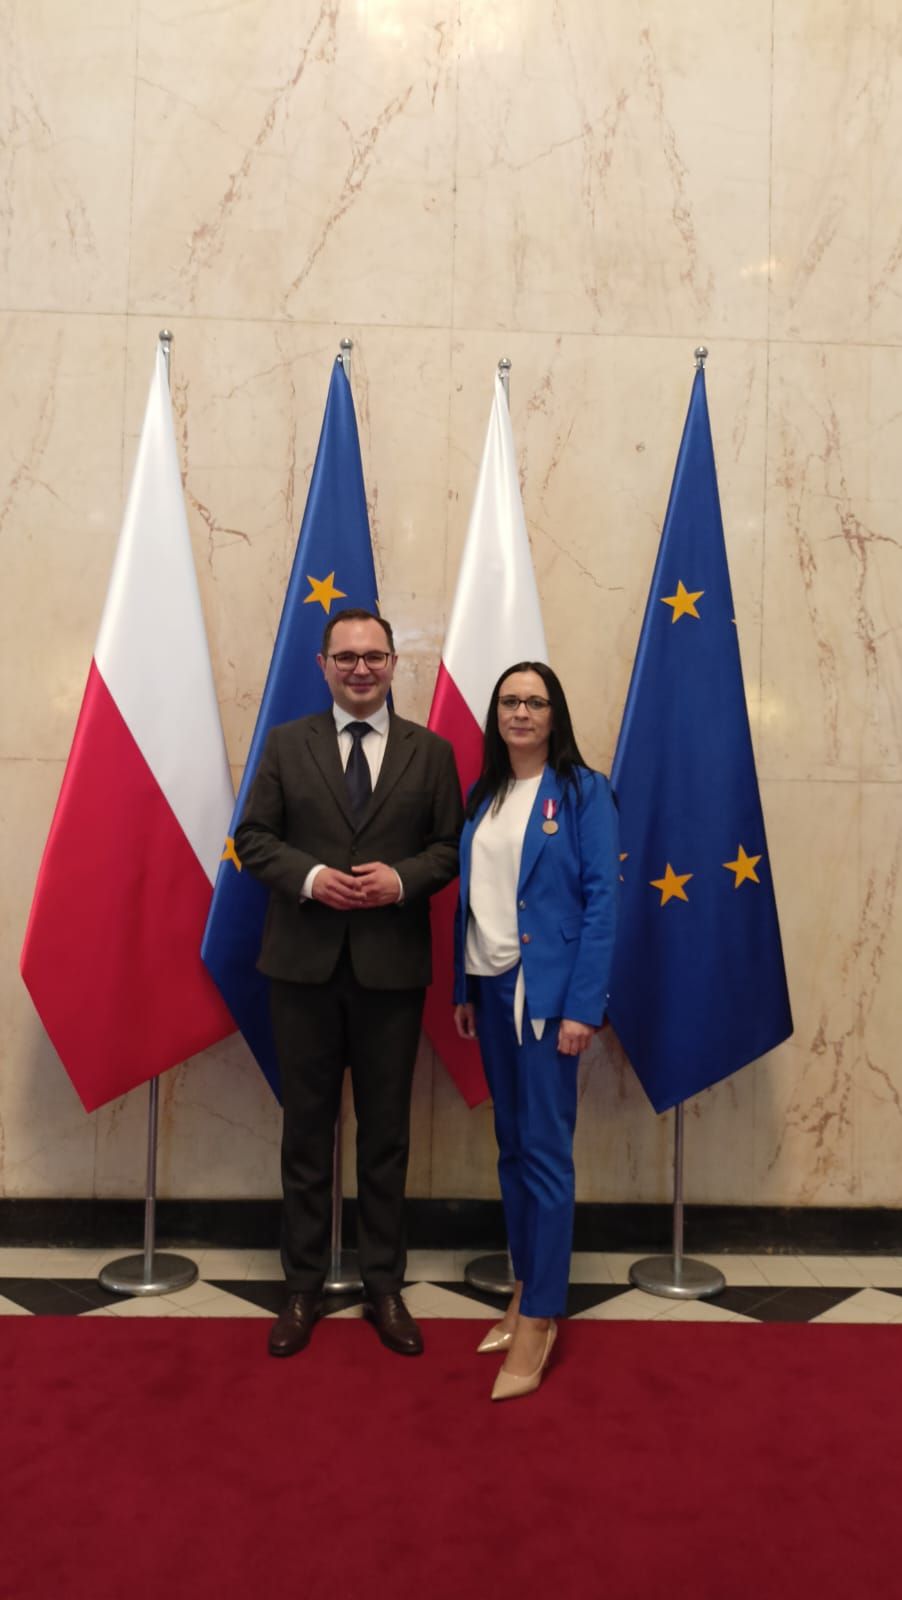 Kobieta i mężczyzna stojący na tle flag Polski i Unii Europejskiej. Kobieta w klapie marynarki ma wpięty medal